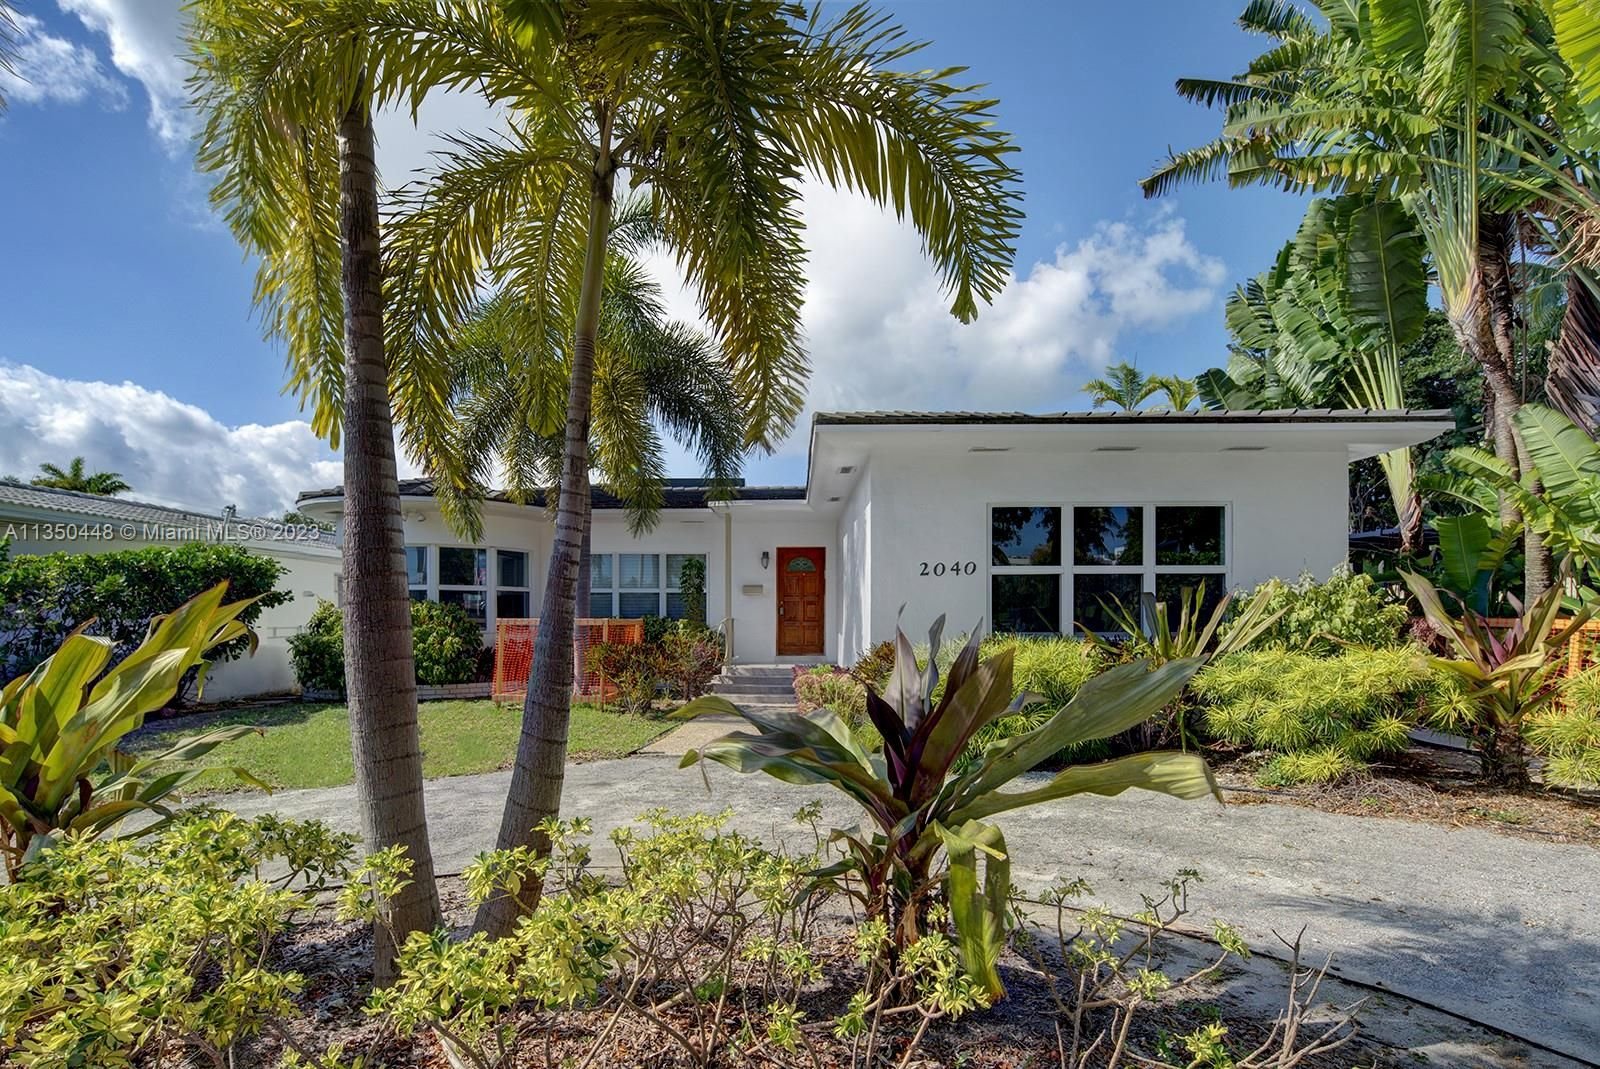 Real estate property located at 2040 Alton Rd, Miami-Dade County, Miami Beach, FL